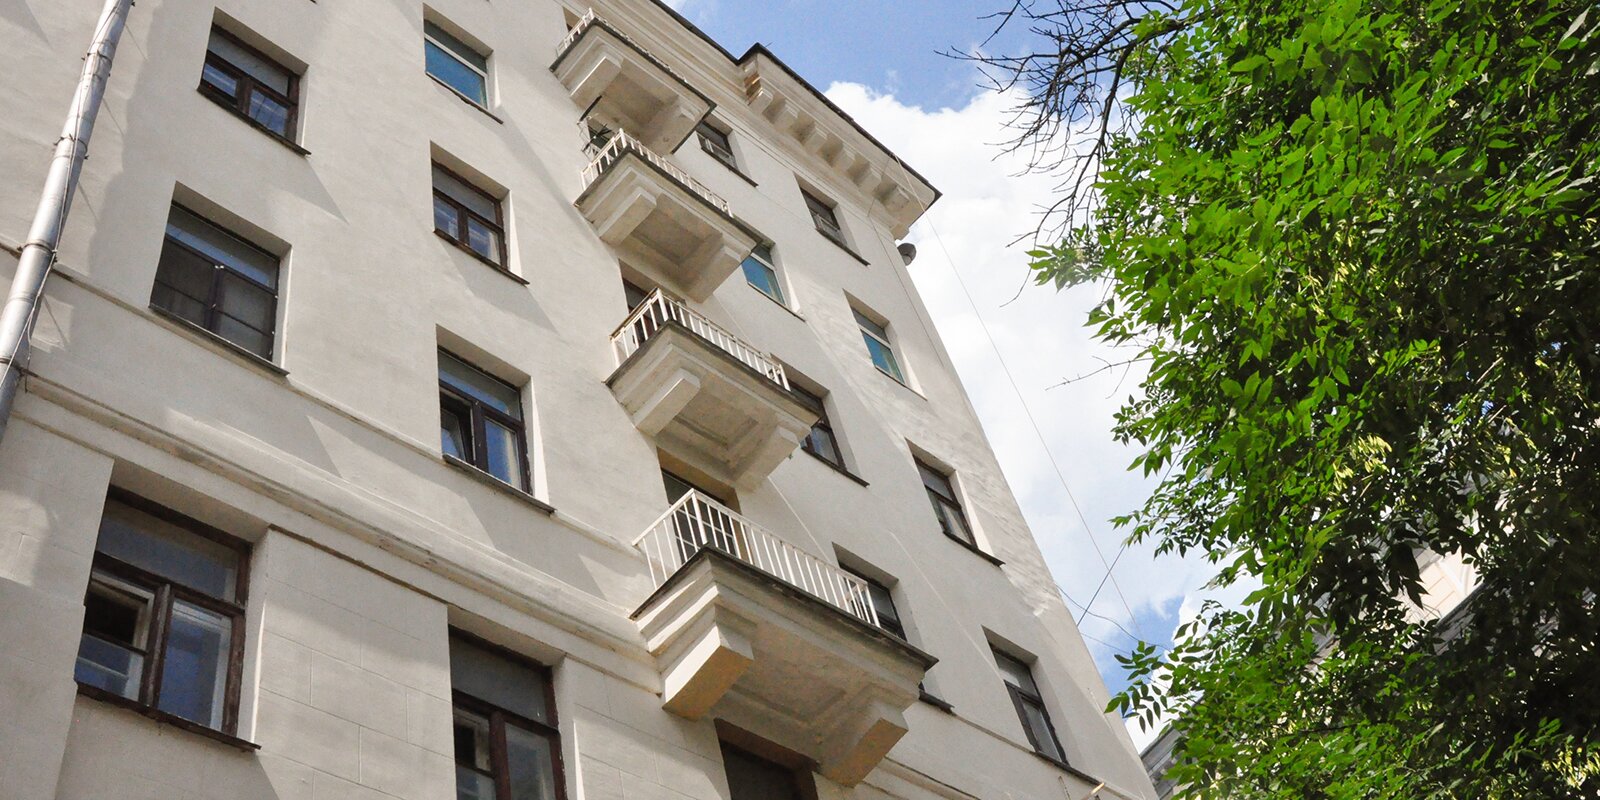 Проект реализуют в рамках программы капитального ремонта жилого фонда. Фото: сайт мэра Москвы